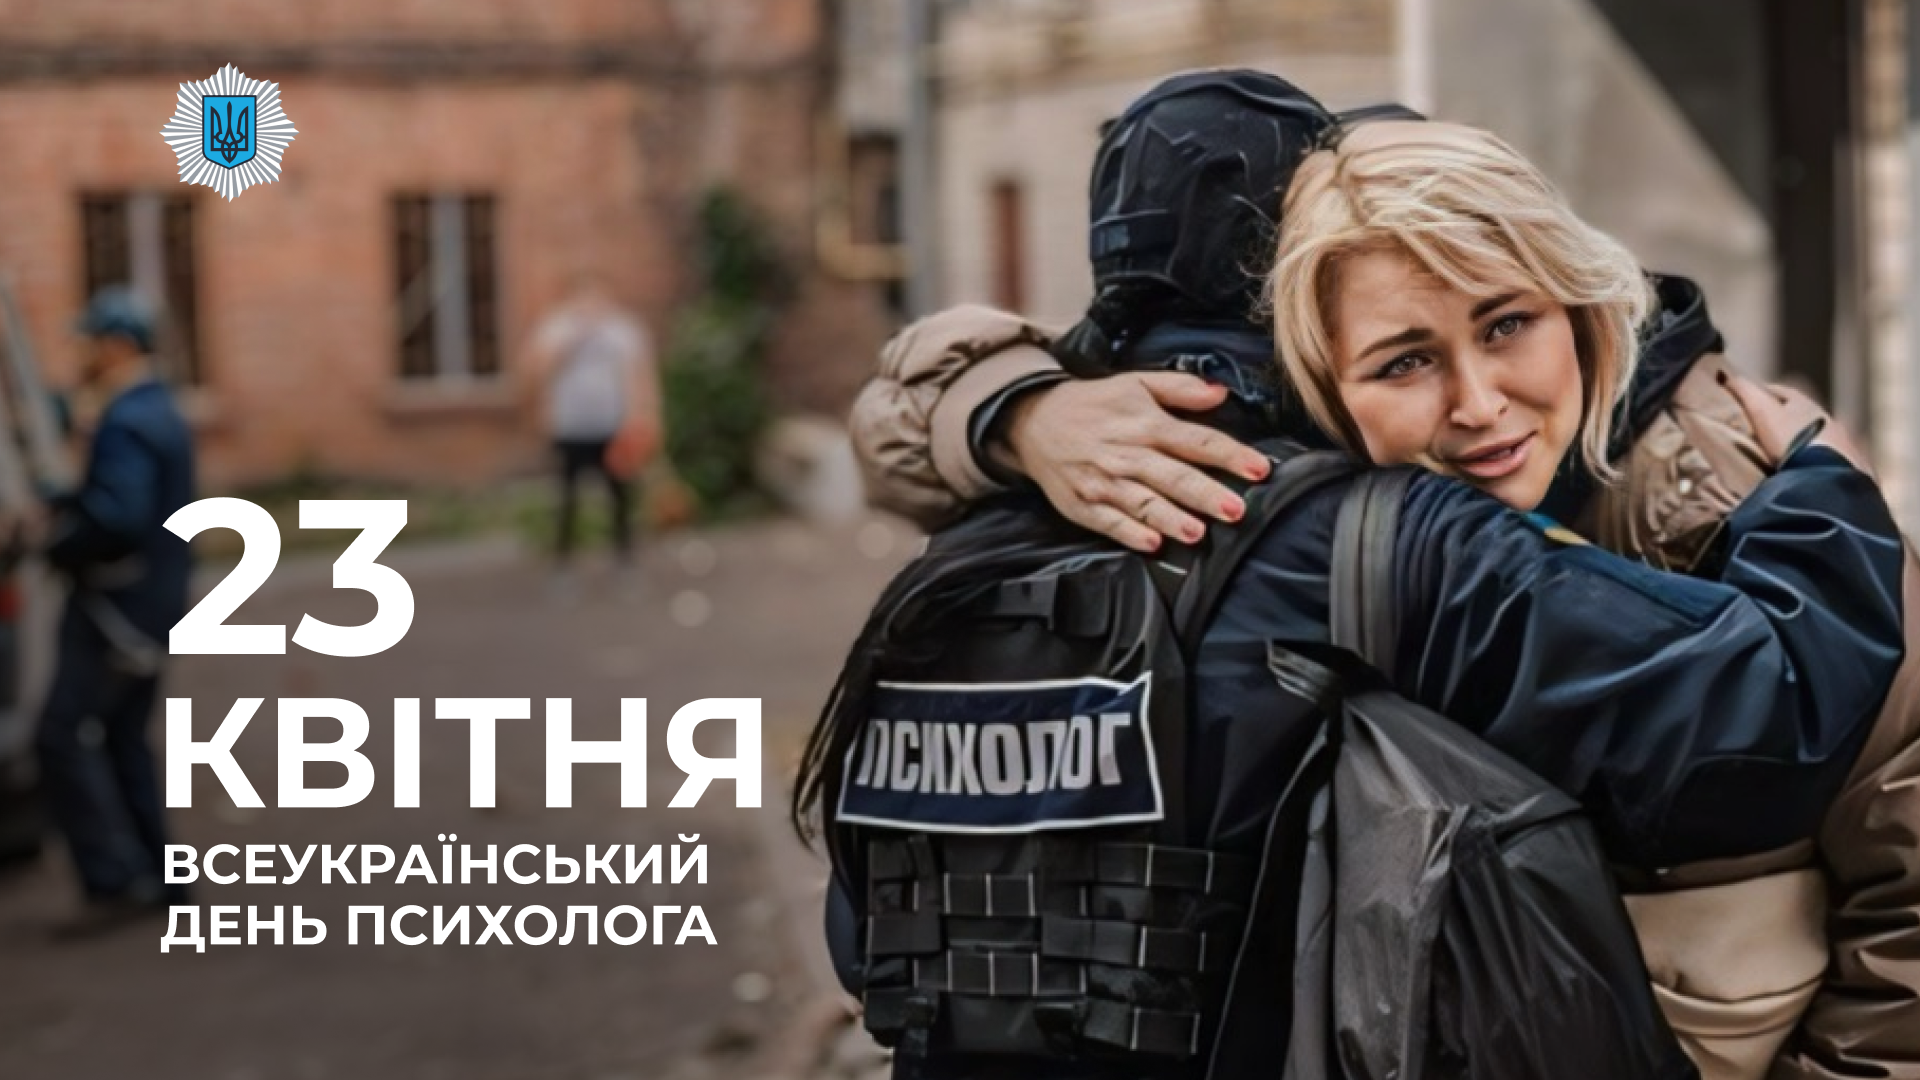 Вони – поруч, коли здається, що надії вже немає: сьогодні в Україні відзначають день психолога